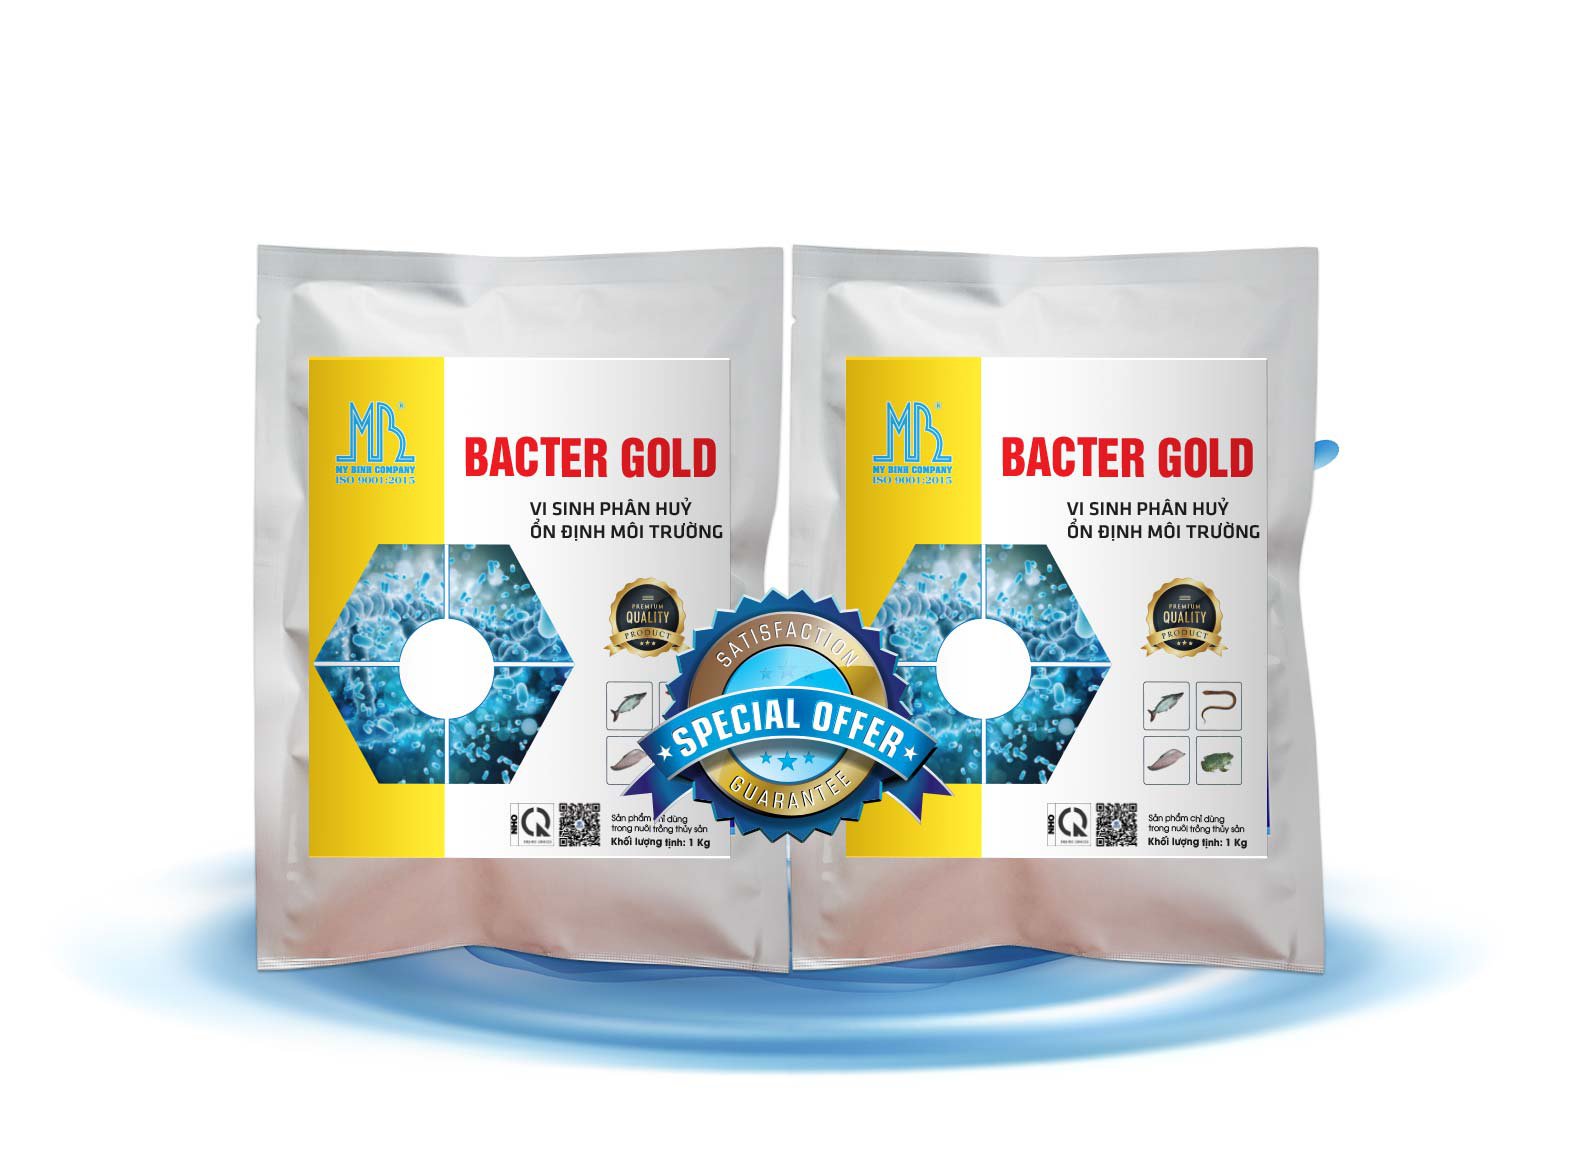 BACTER GOLD - Làm sạch nước ao giảm nhanh khí độc trong ao cá